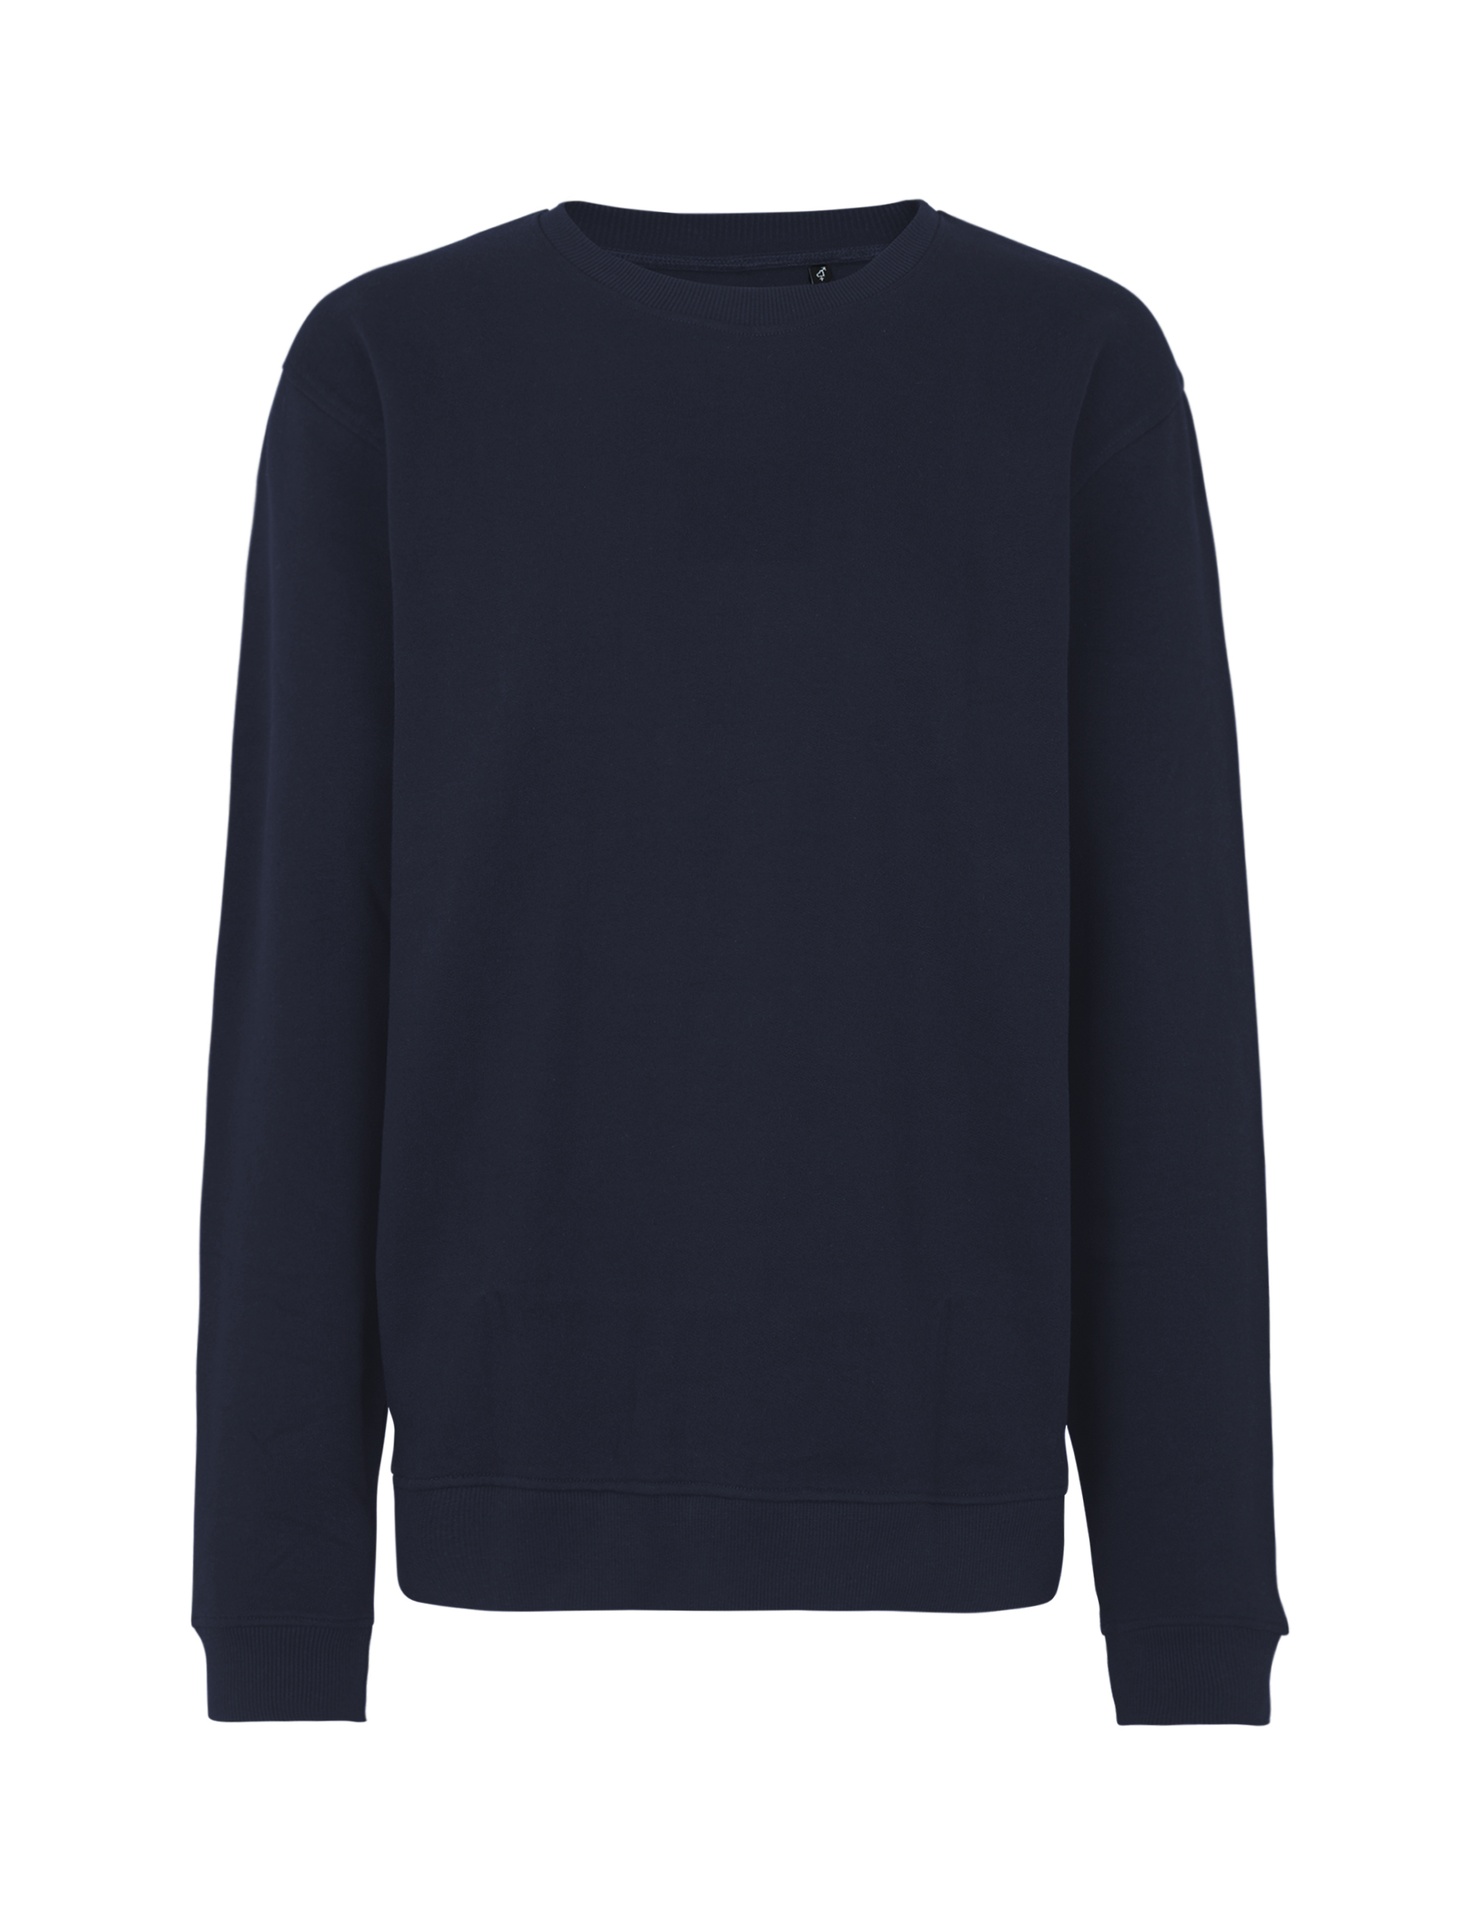 [PR/03532] Unisex Workwear Sweatshirt (Navy 04, M)